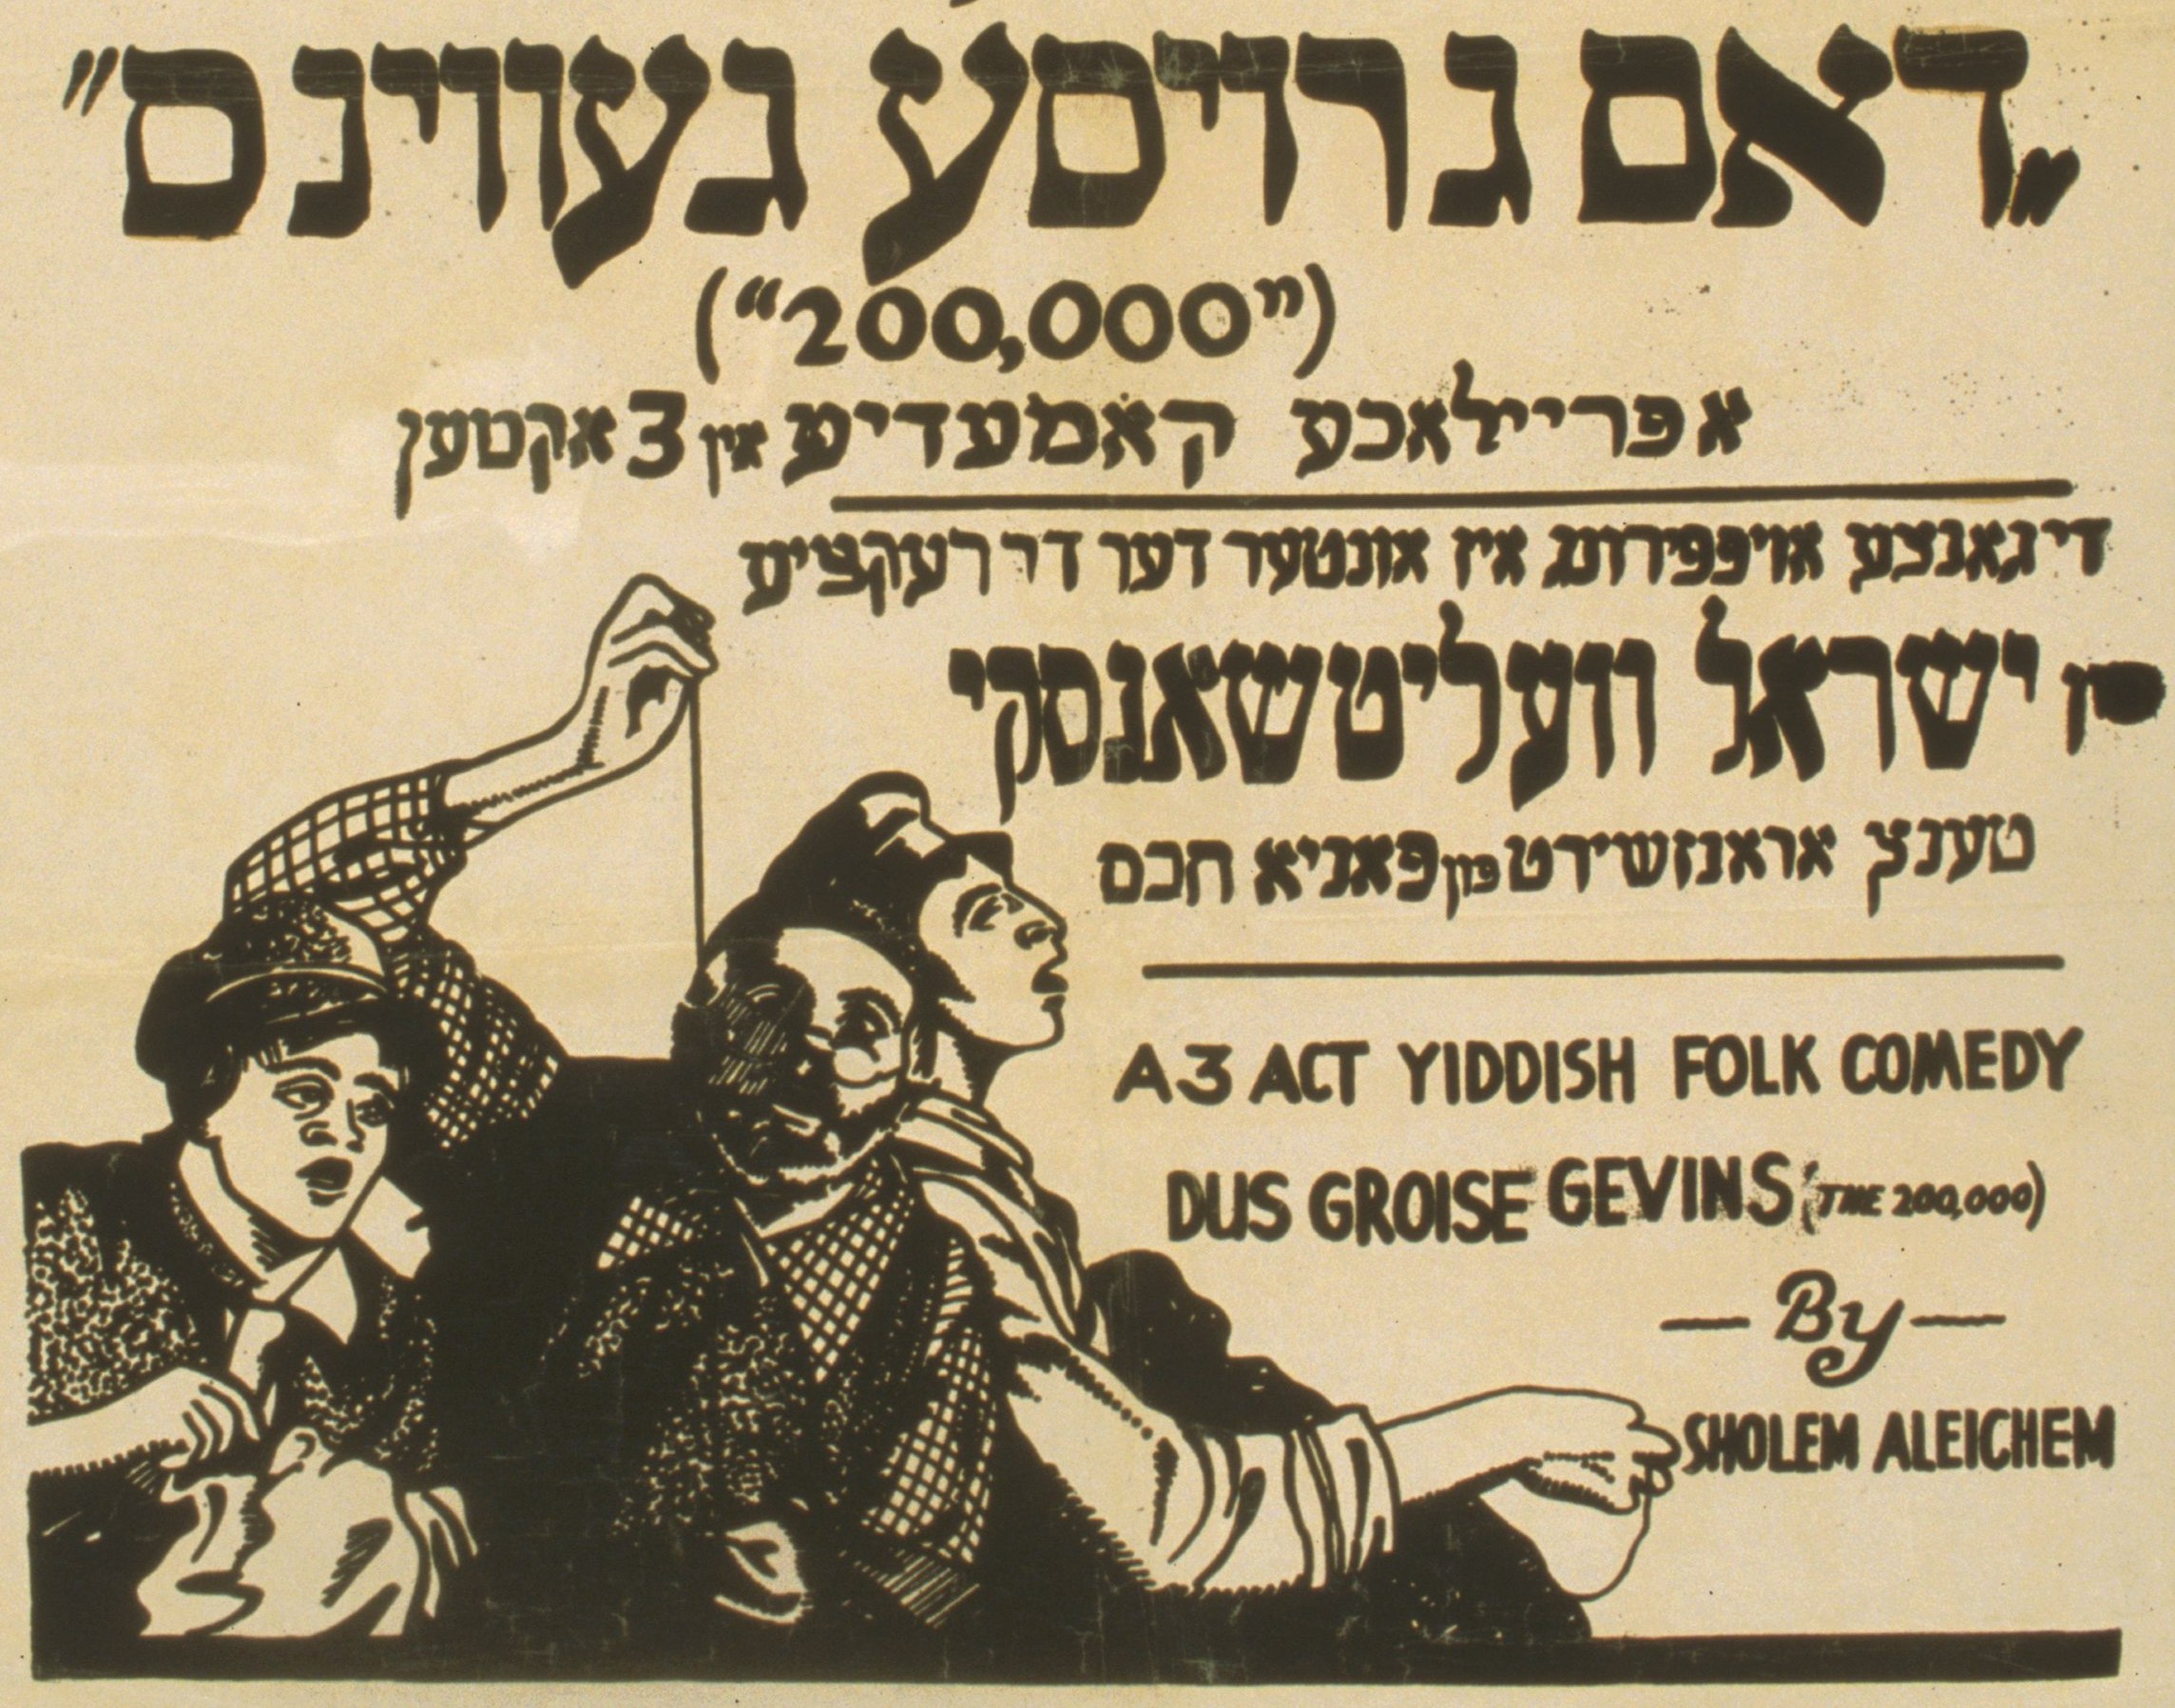 yiddish translator with voice